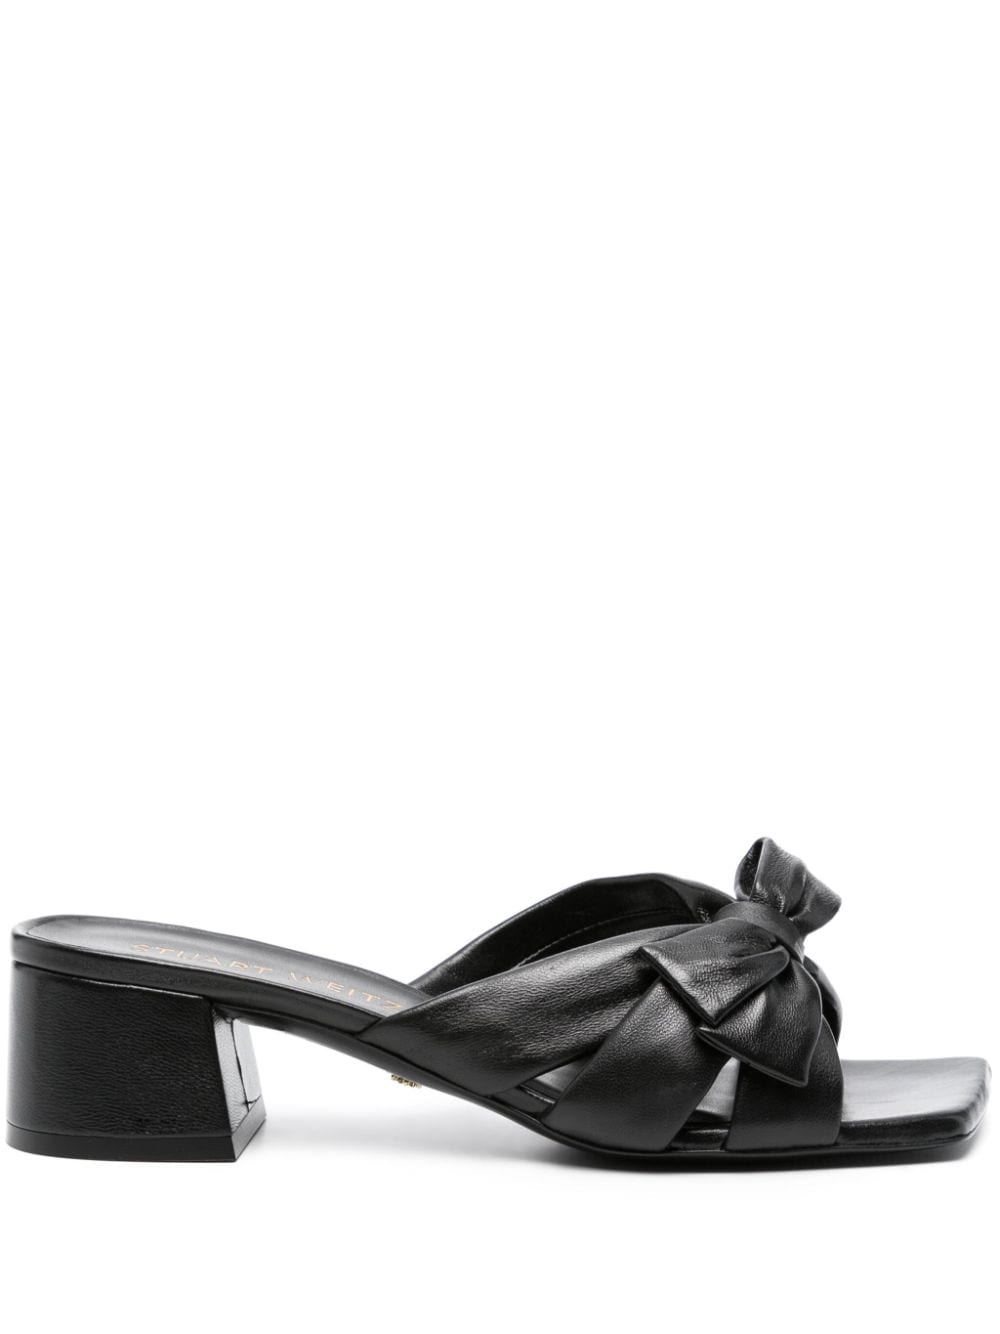 Stuart Weitzman Sofia 45mm leather sandals - Black von Stuart Weitzman